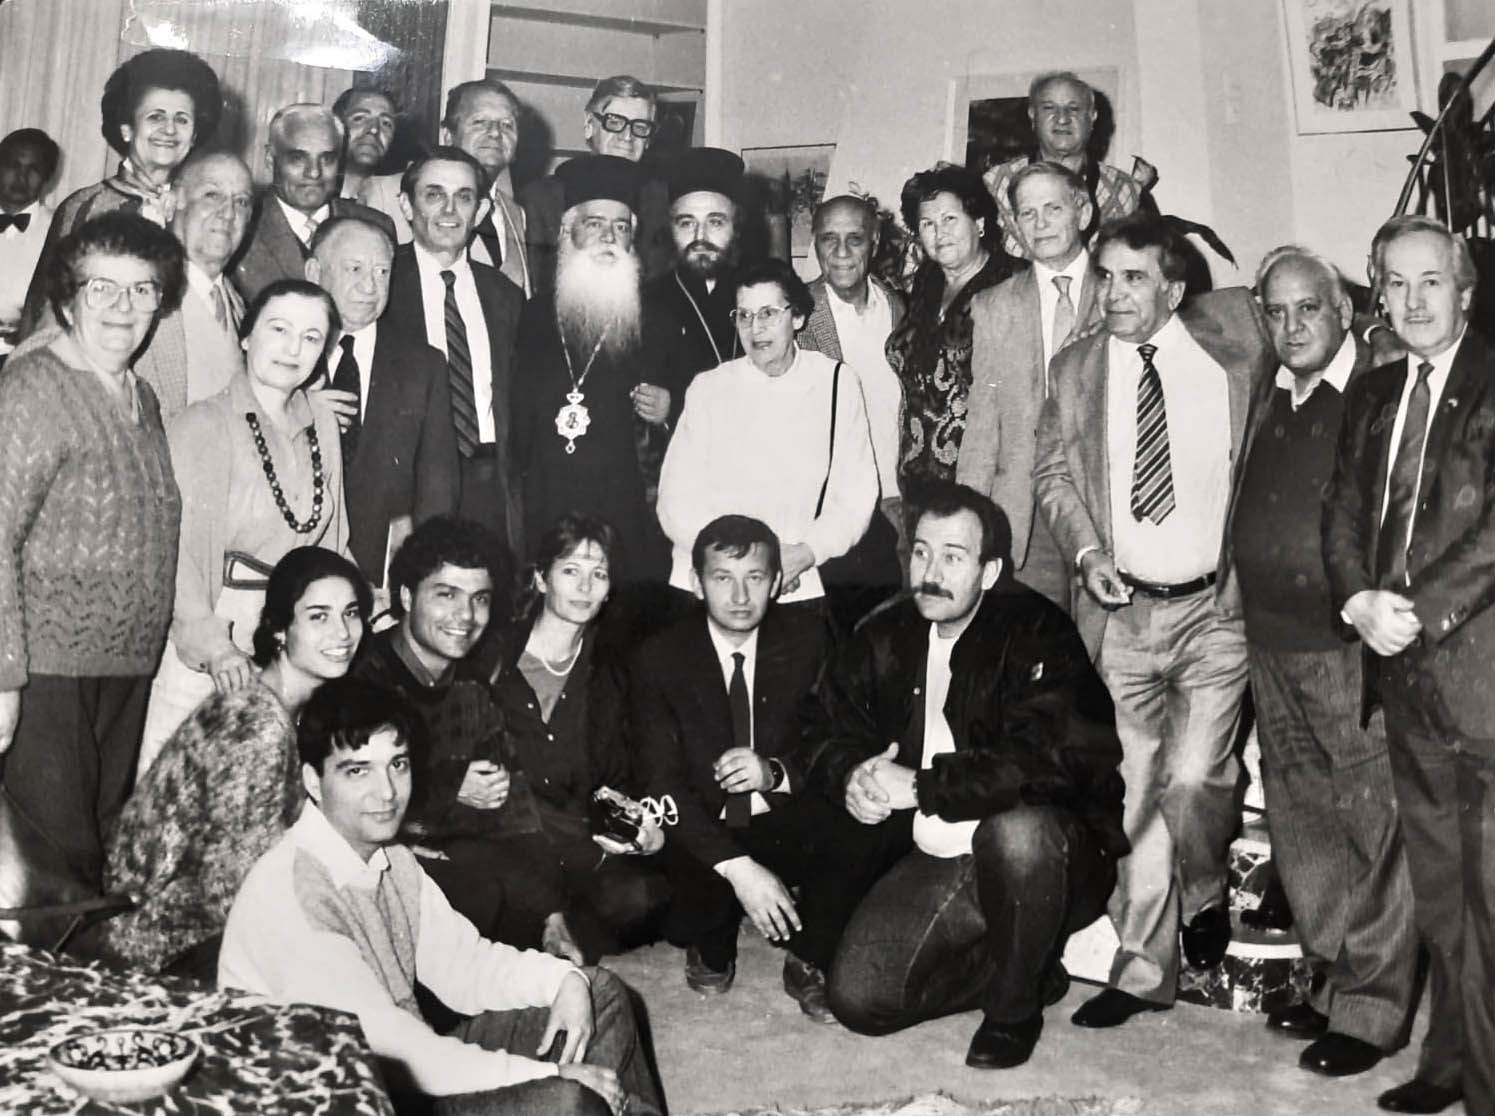 ג'קי חנדלי (בשורה העליונה, רביעי משמאל) בסיור ביוון עם ניצולי שואה מיוון ובני משפחותיהם, בשלהי שנות השמונים (צילום: אלבום פרטי)